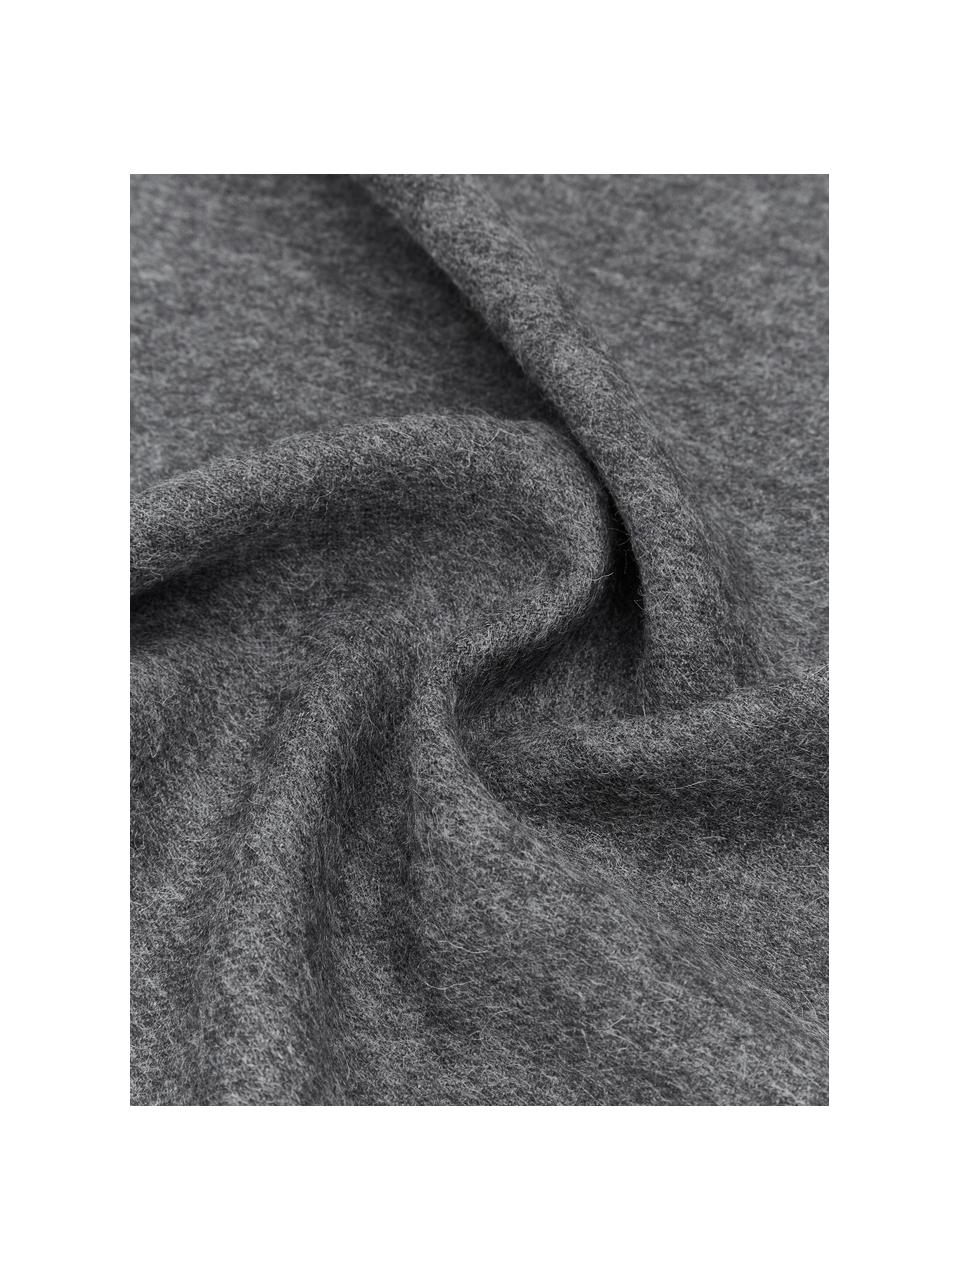 Manta de lana de alpaca bebé Luxury, 100% lana de alpaca bebé
 
Esta manta está tejida con lana de baby alpaca de gran calidad y suavidad. Es suave al tacto y proporciona un calor acogedor, es resistente pero ligera y tiene excelentes propiedades termorreguladoras. Por todo ello, esta manta es la compañera perfecta para las frescas tardes de verano y los fríos días de invierno., Gris oscuro, An 130 x L 200 cm